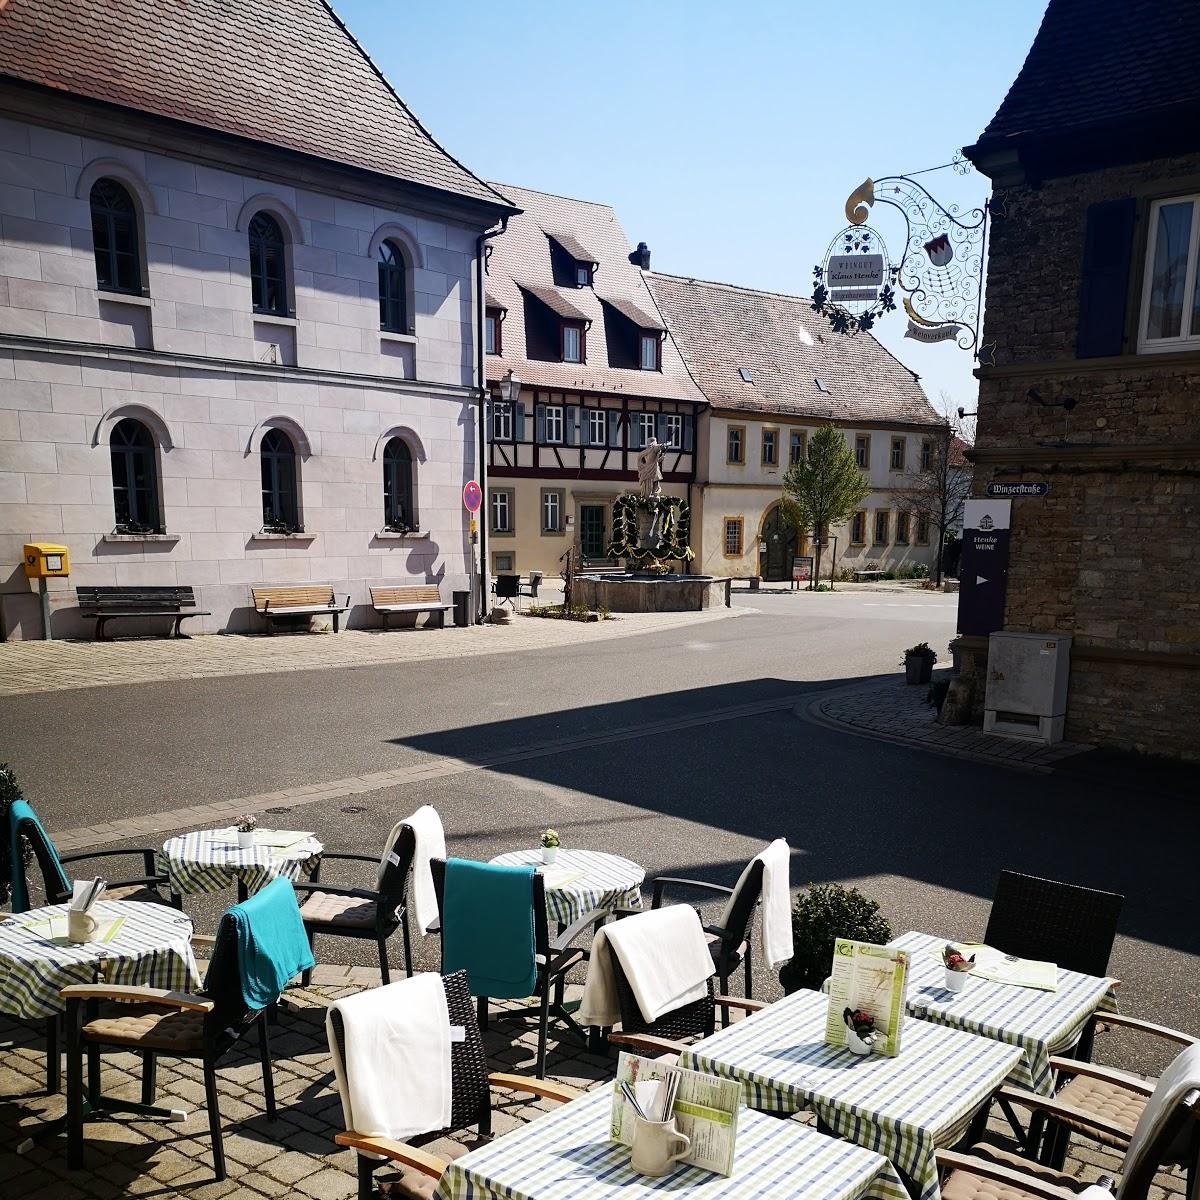 Restaurant "WeinEck" in Sommerach